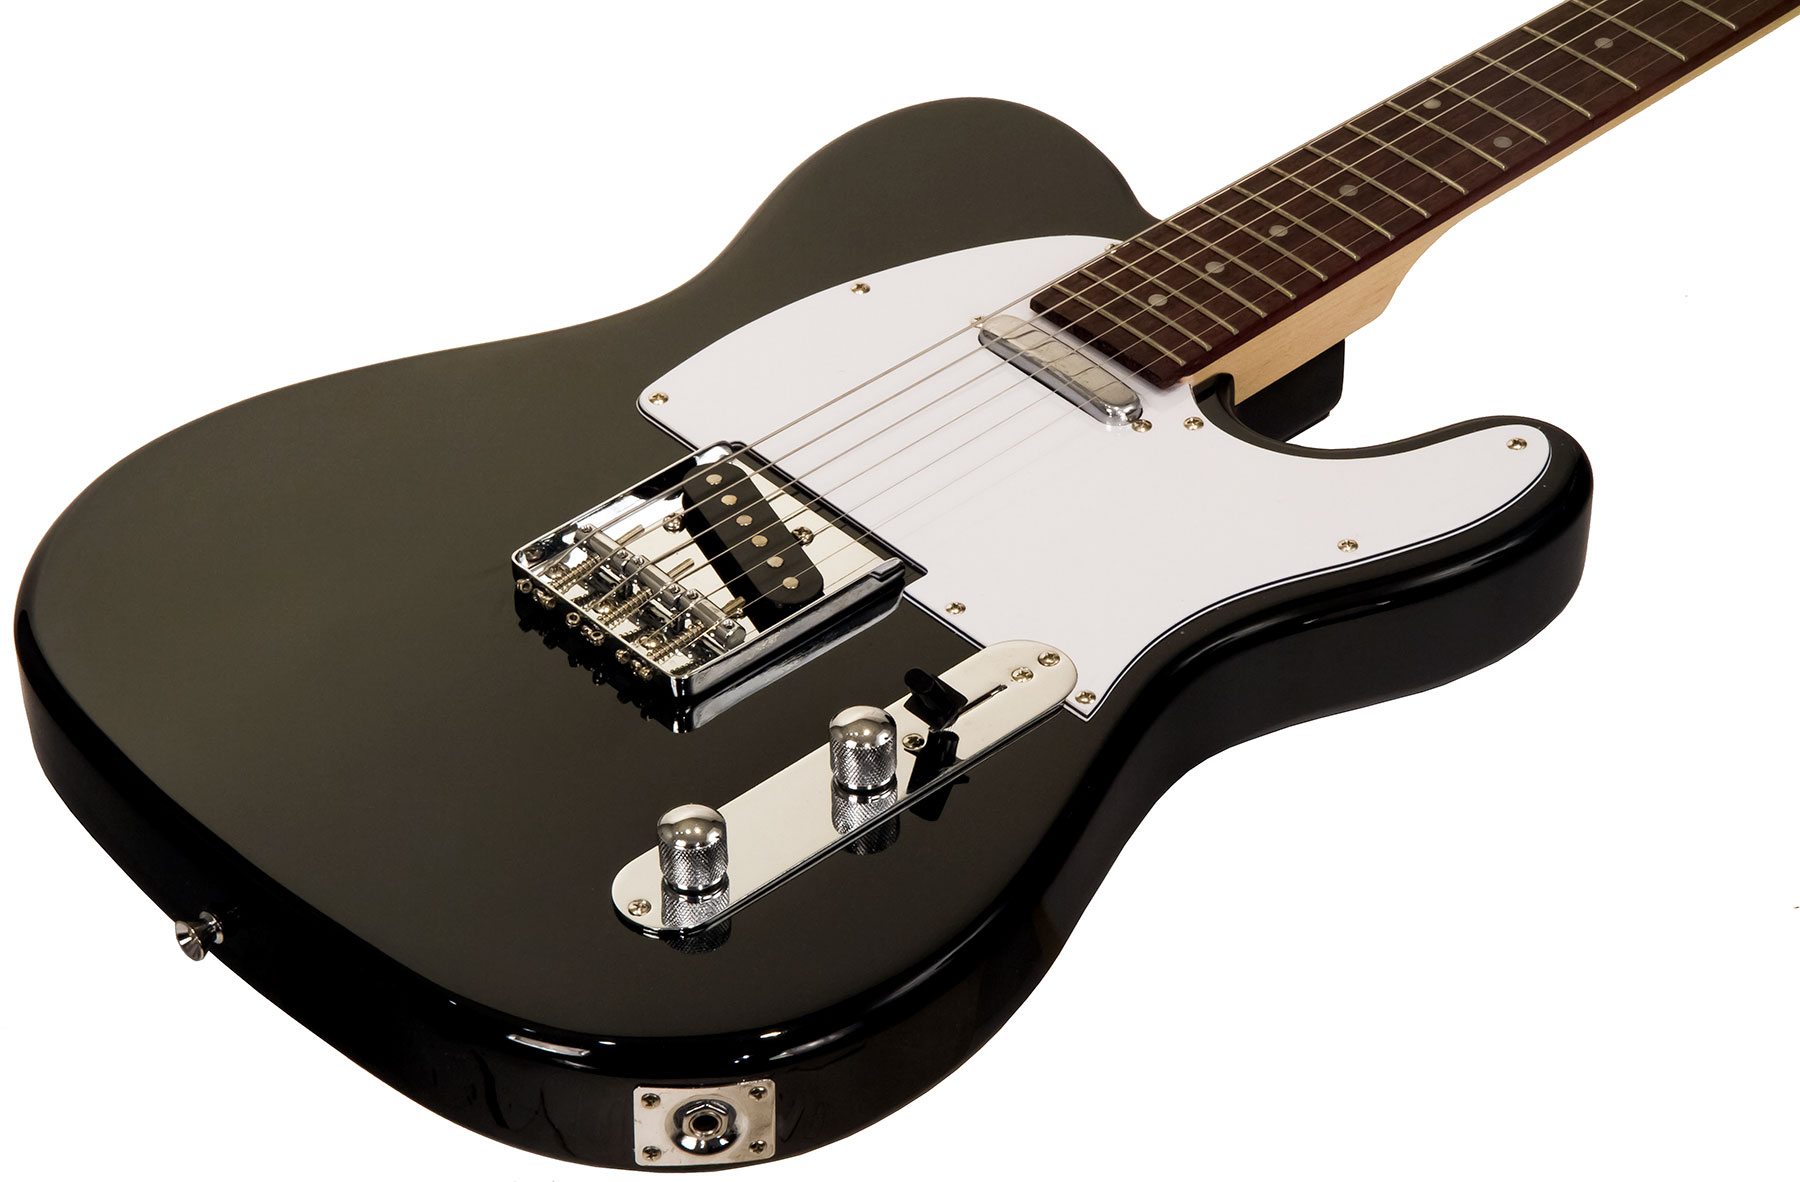 Eastone Tl70 Ss Ht Pur - Black - Televorm elektrische gitaar - Variation 1